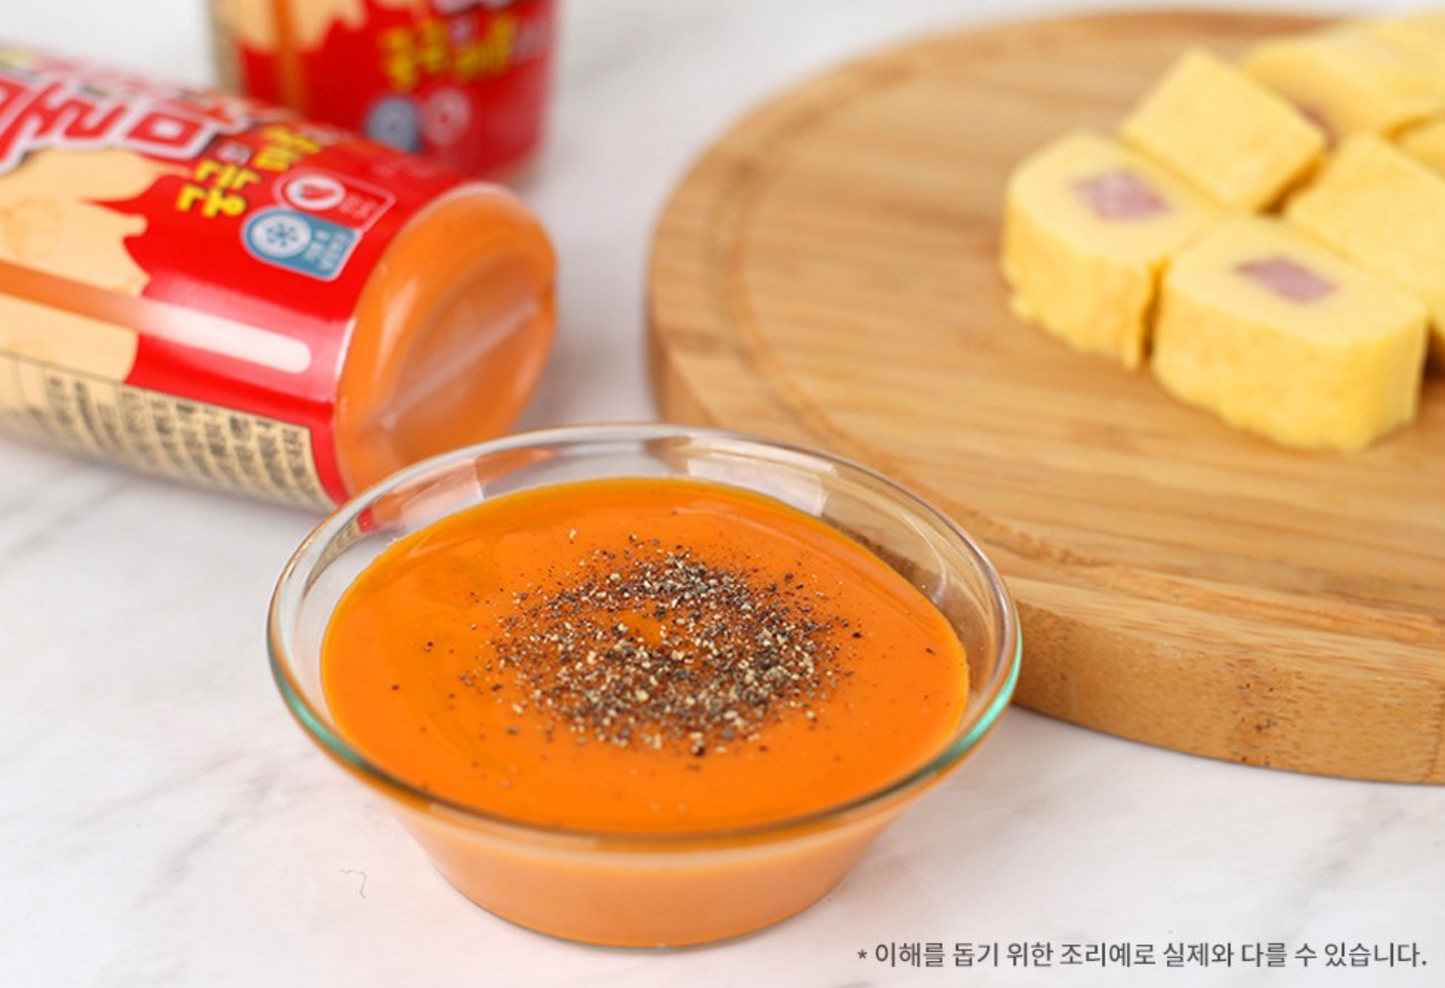 Samyang Buldak Mayo Sauce (삼양 불닭마요 소스)